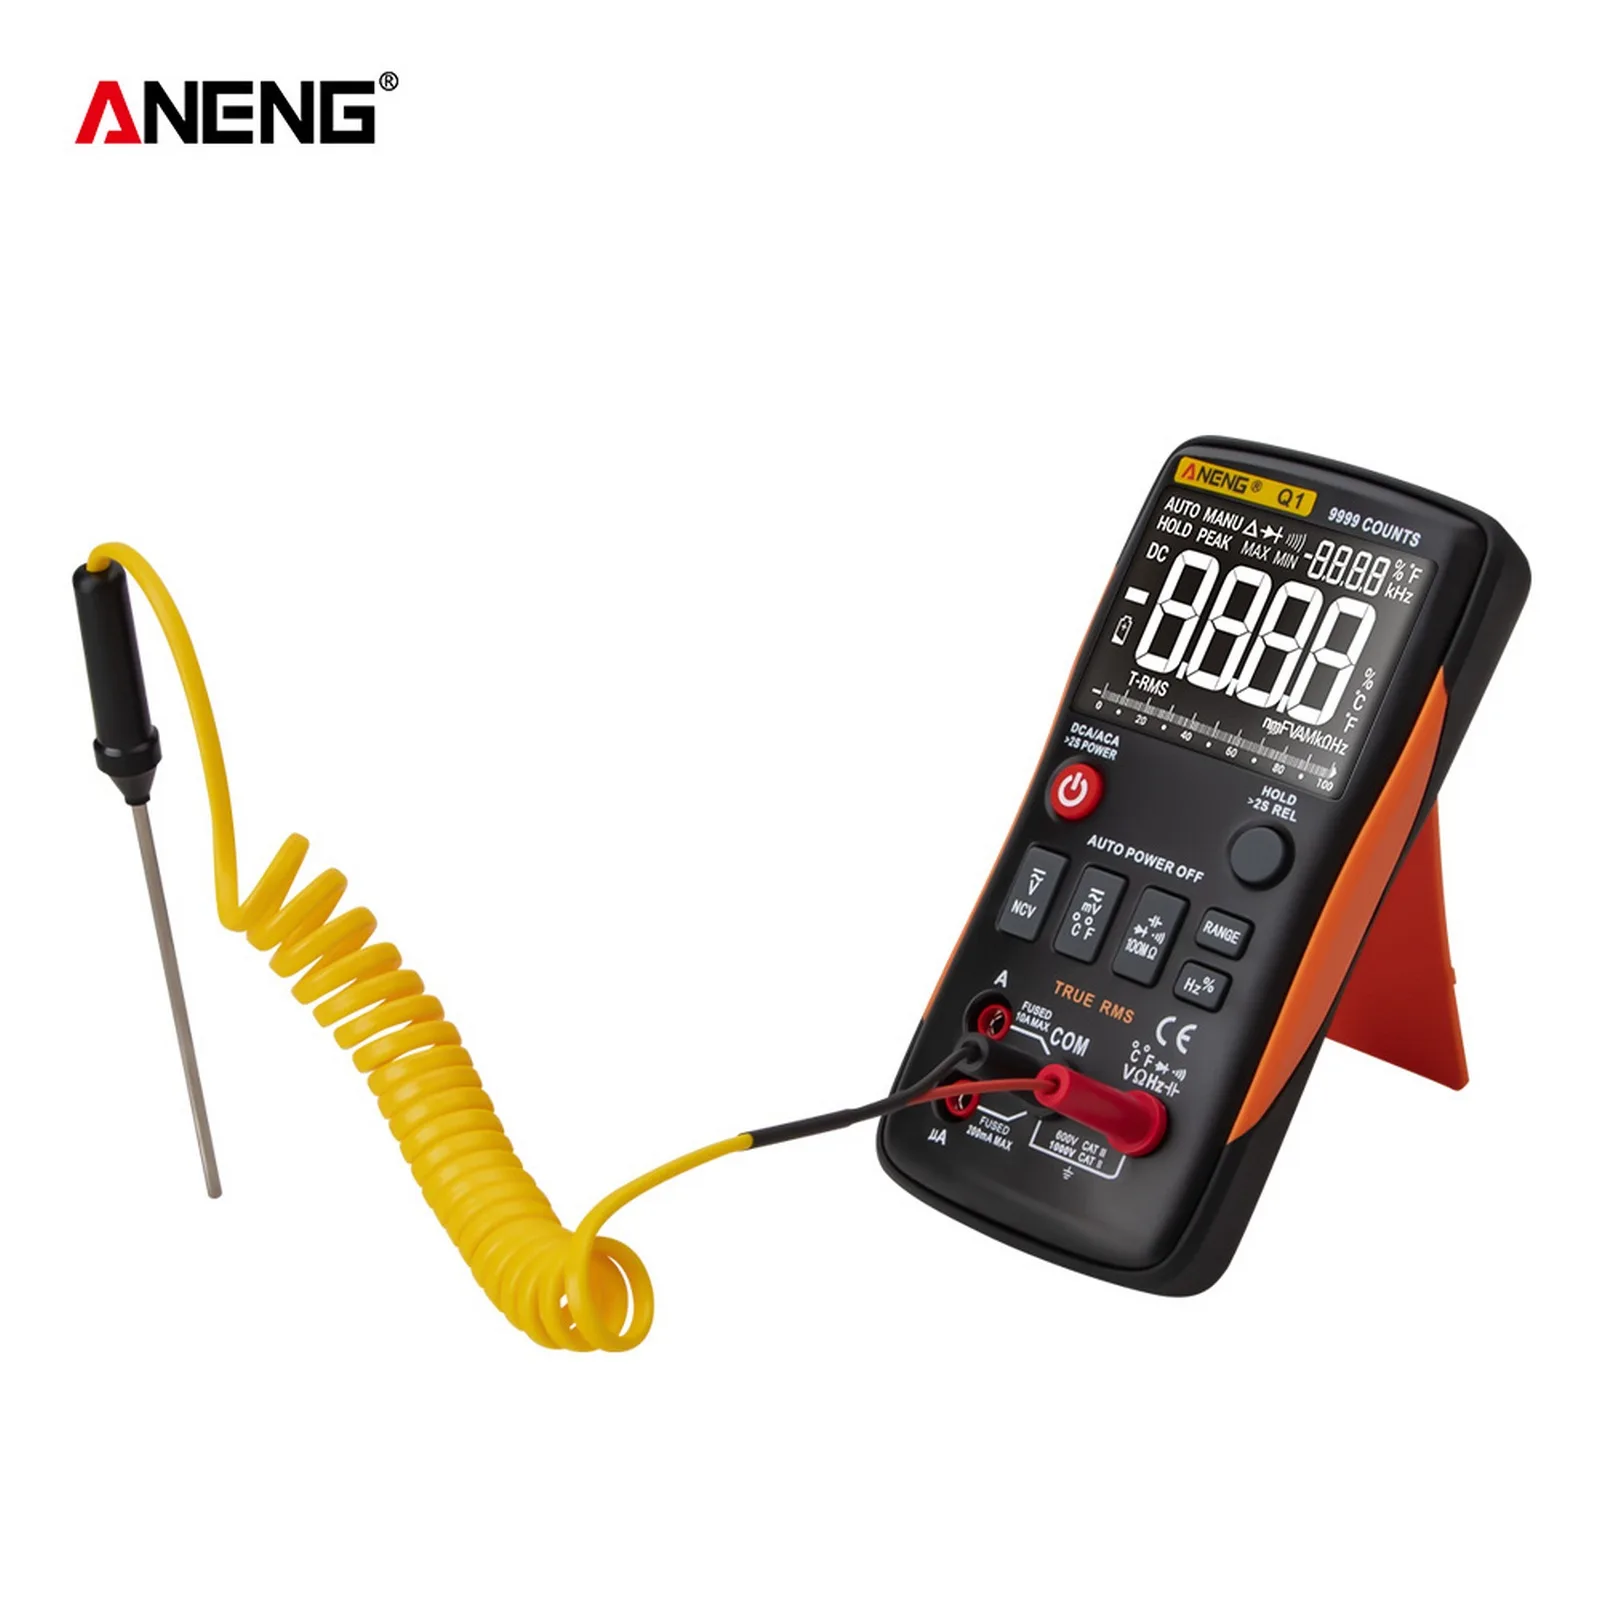 

Цифровой мультиметр ANENG Q1, измерение напряжения переменного тока, напряжения постоянного тока, сопротивления, емкости, диодов, тестеры NCV, Из...